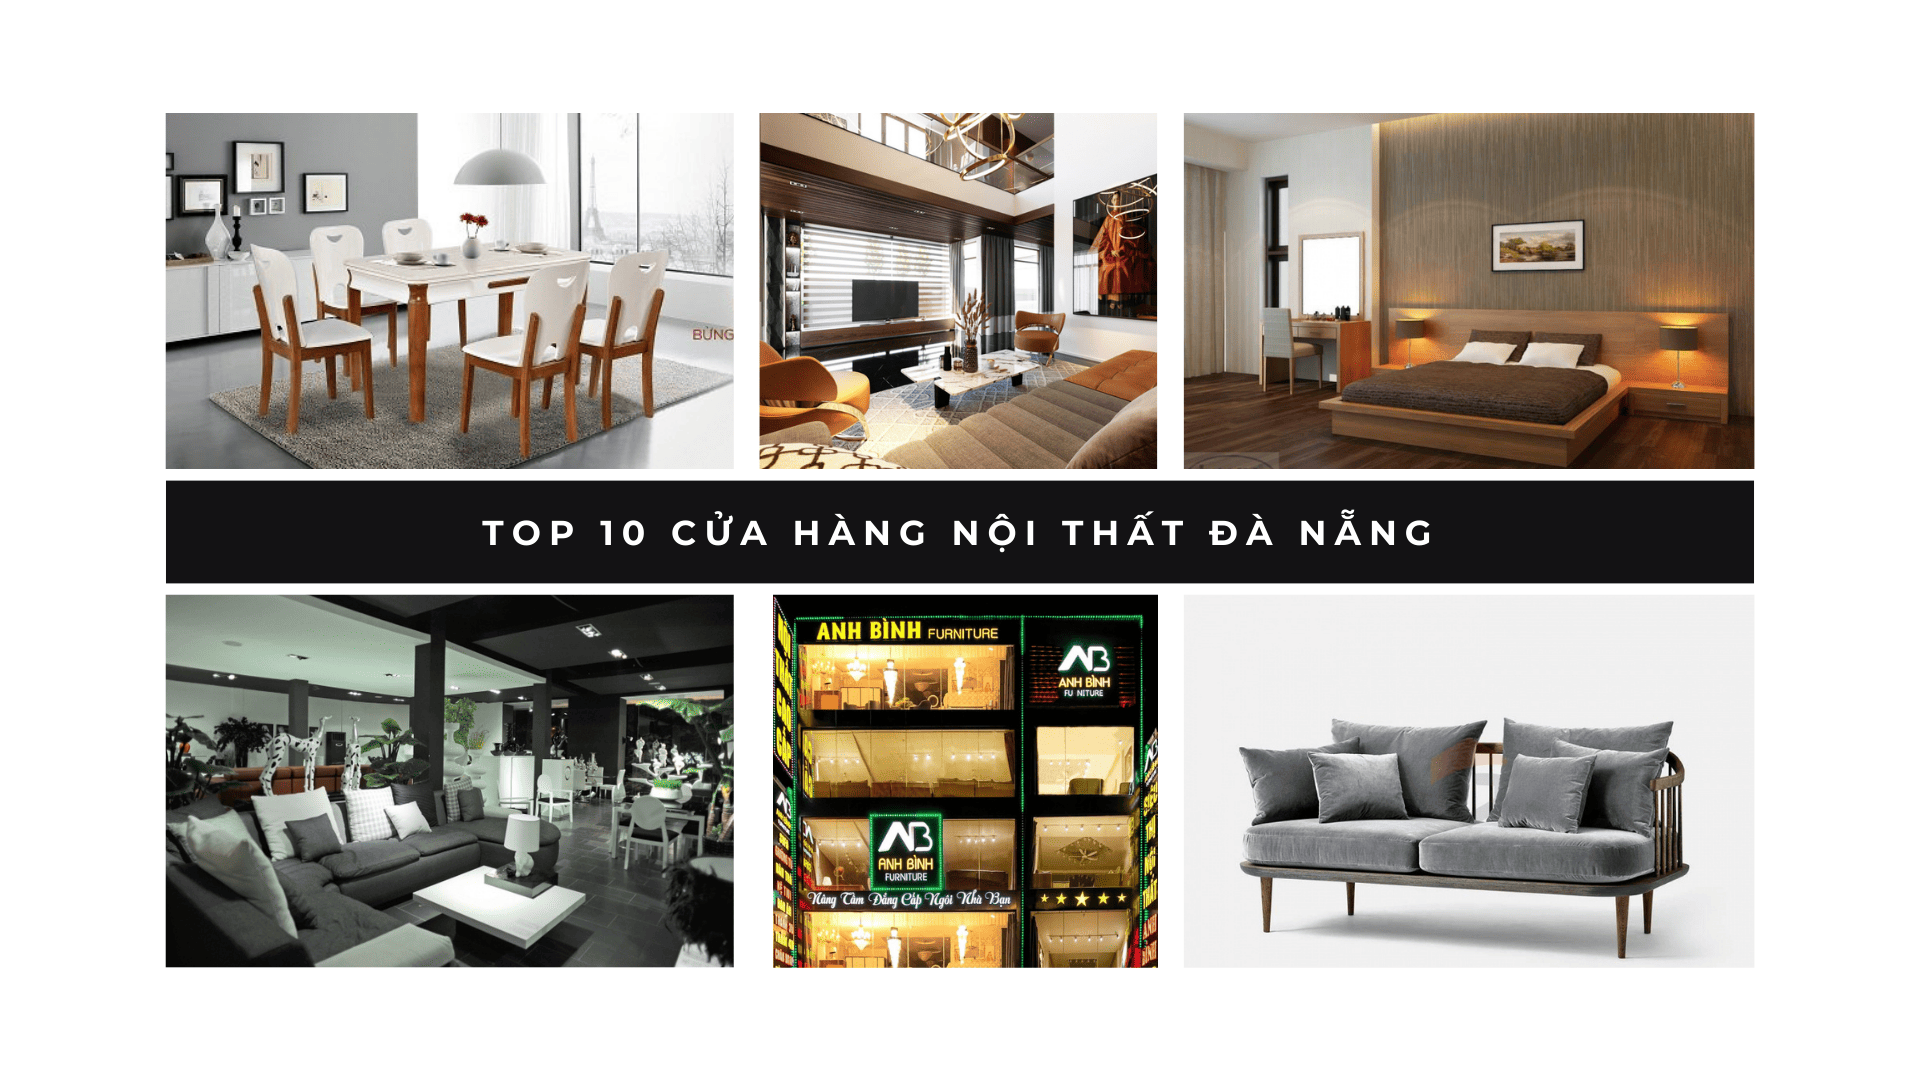 Top 10 cửa hàng nội thất Đà Nẵng mà bạn nên biết